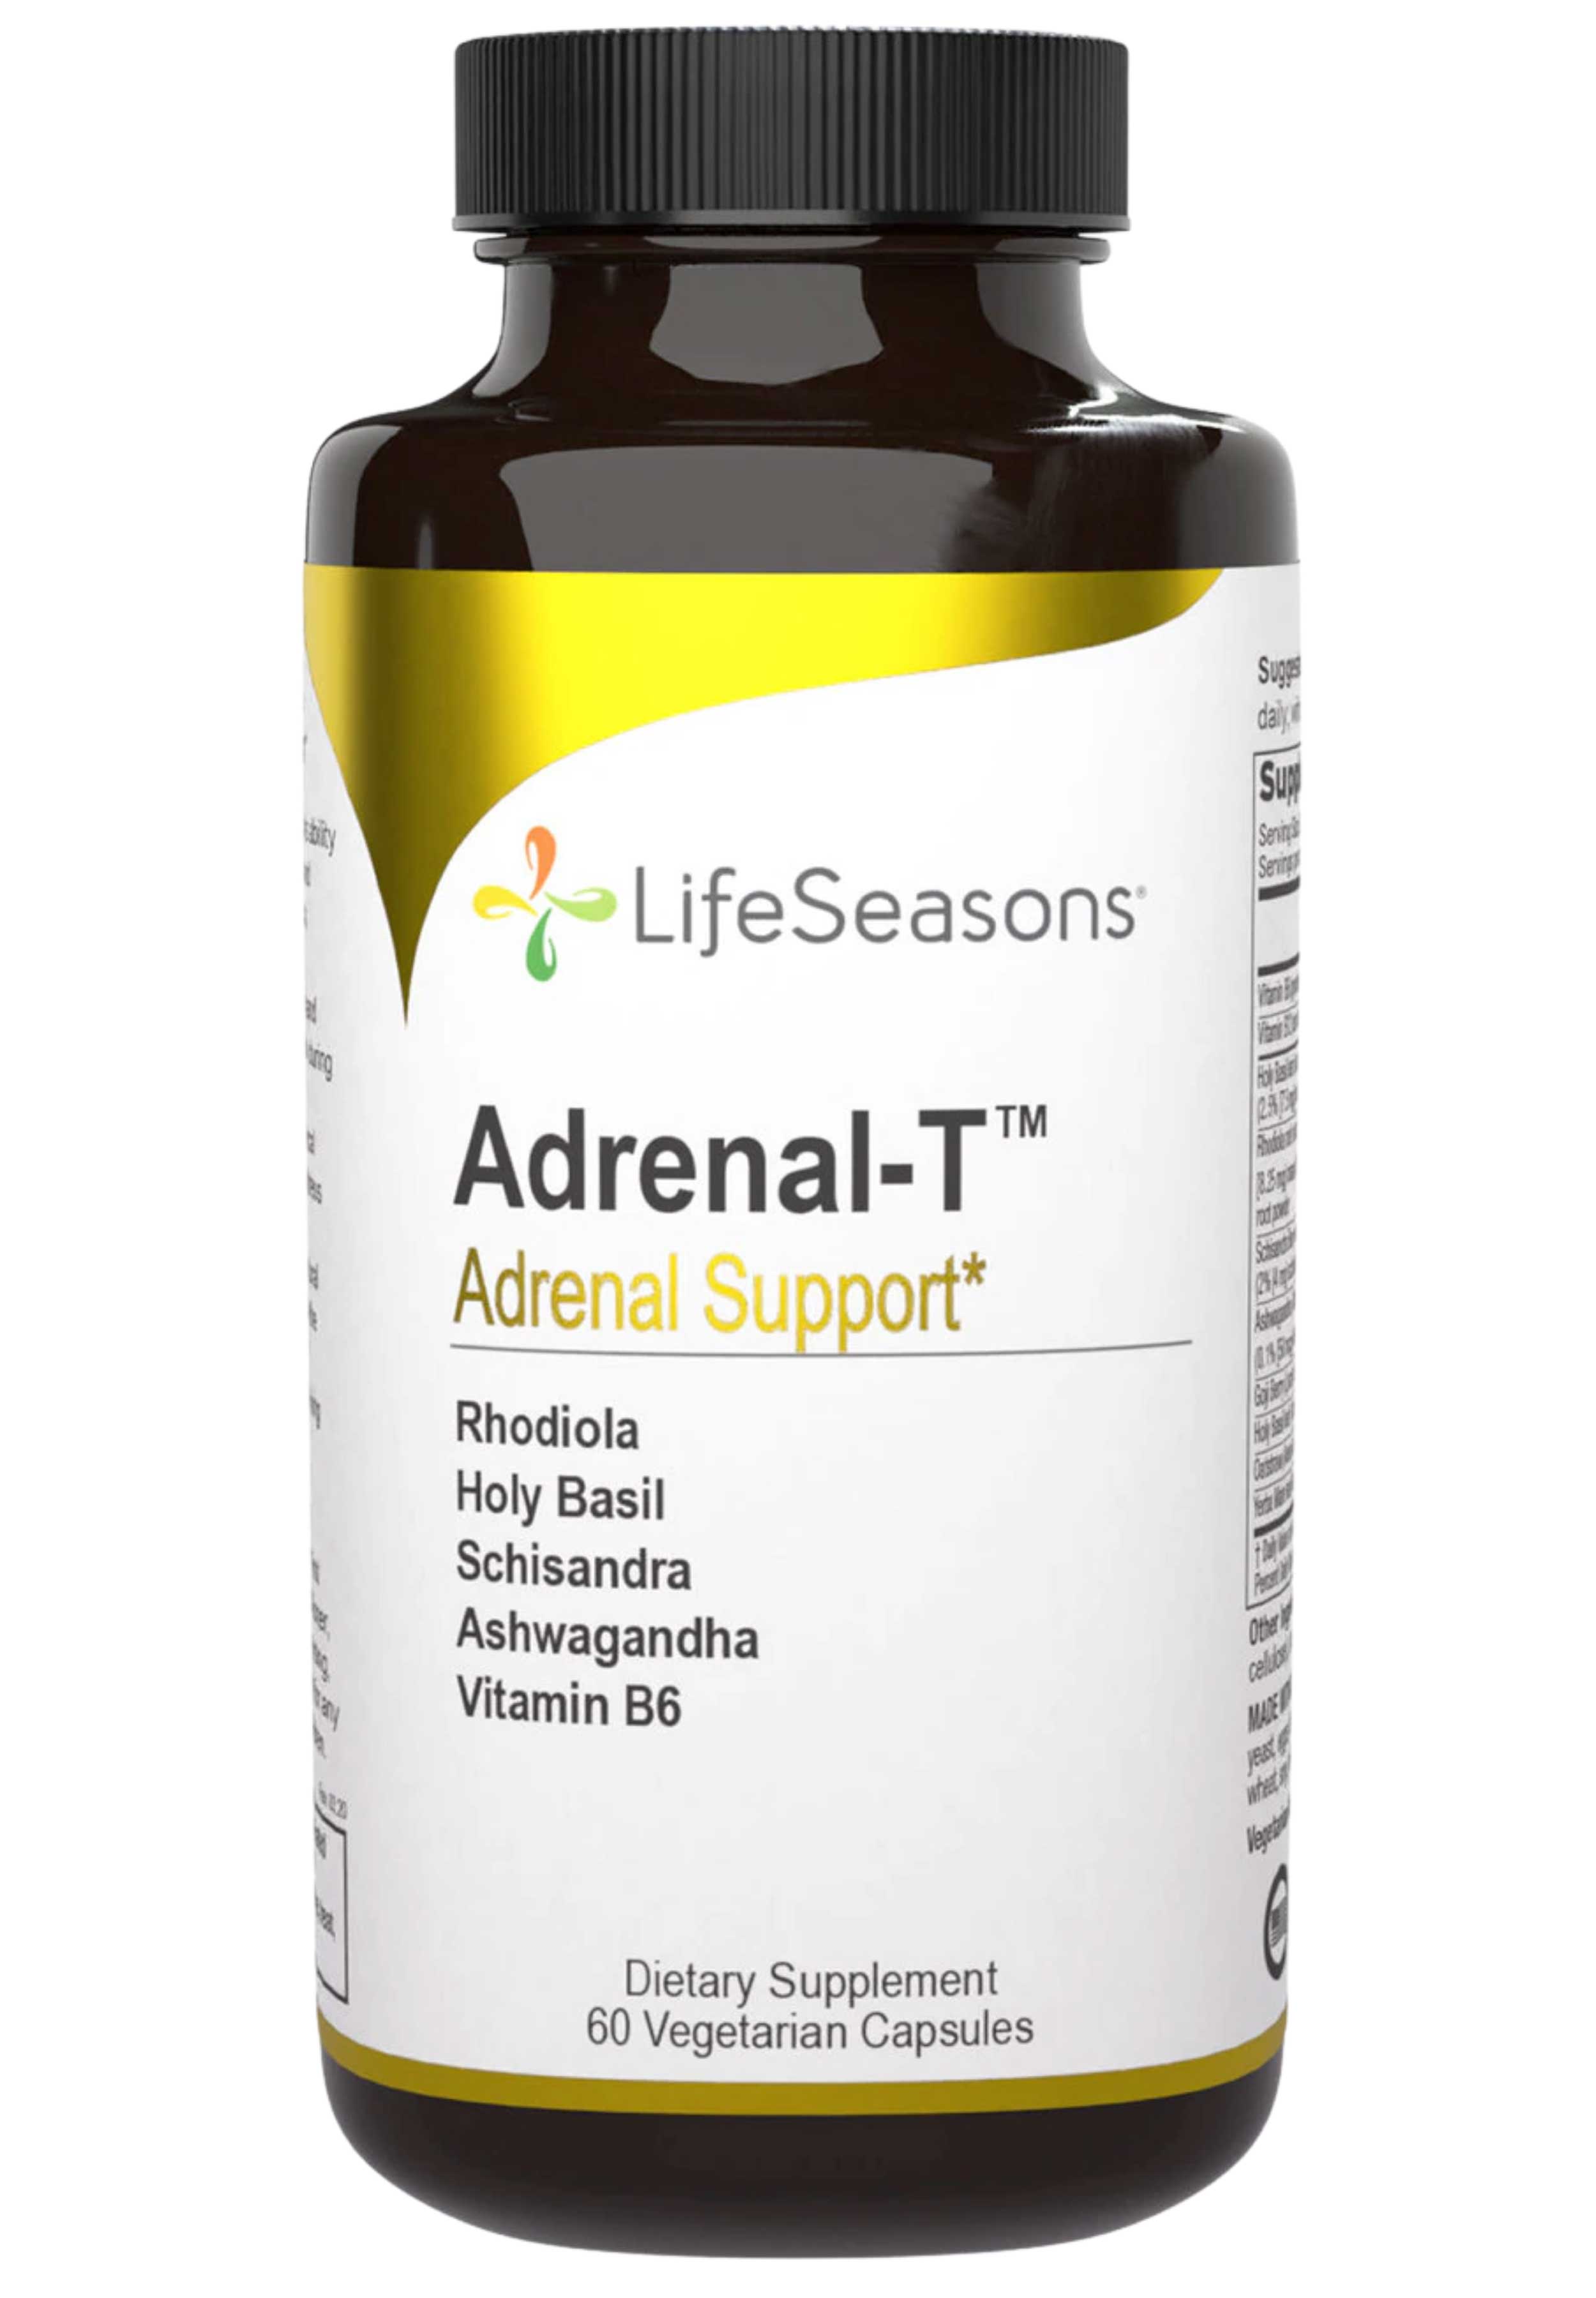 LifeSeasons Adrenal-T